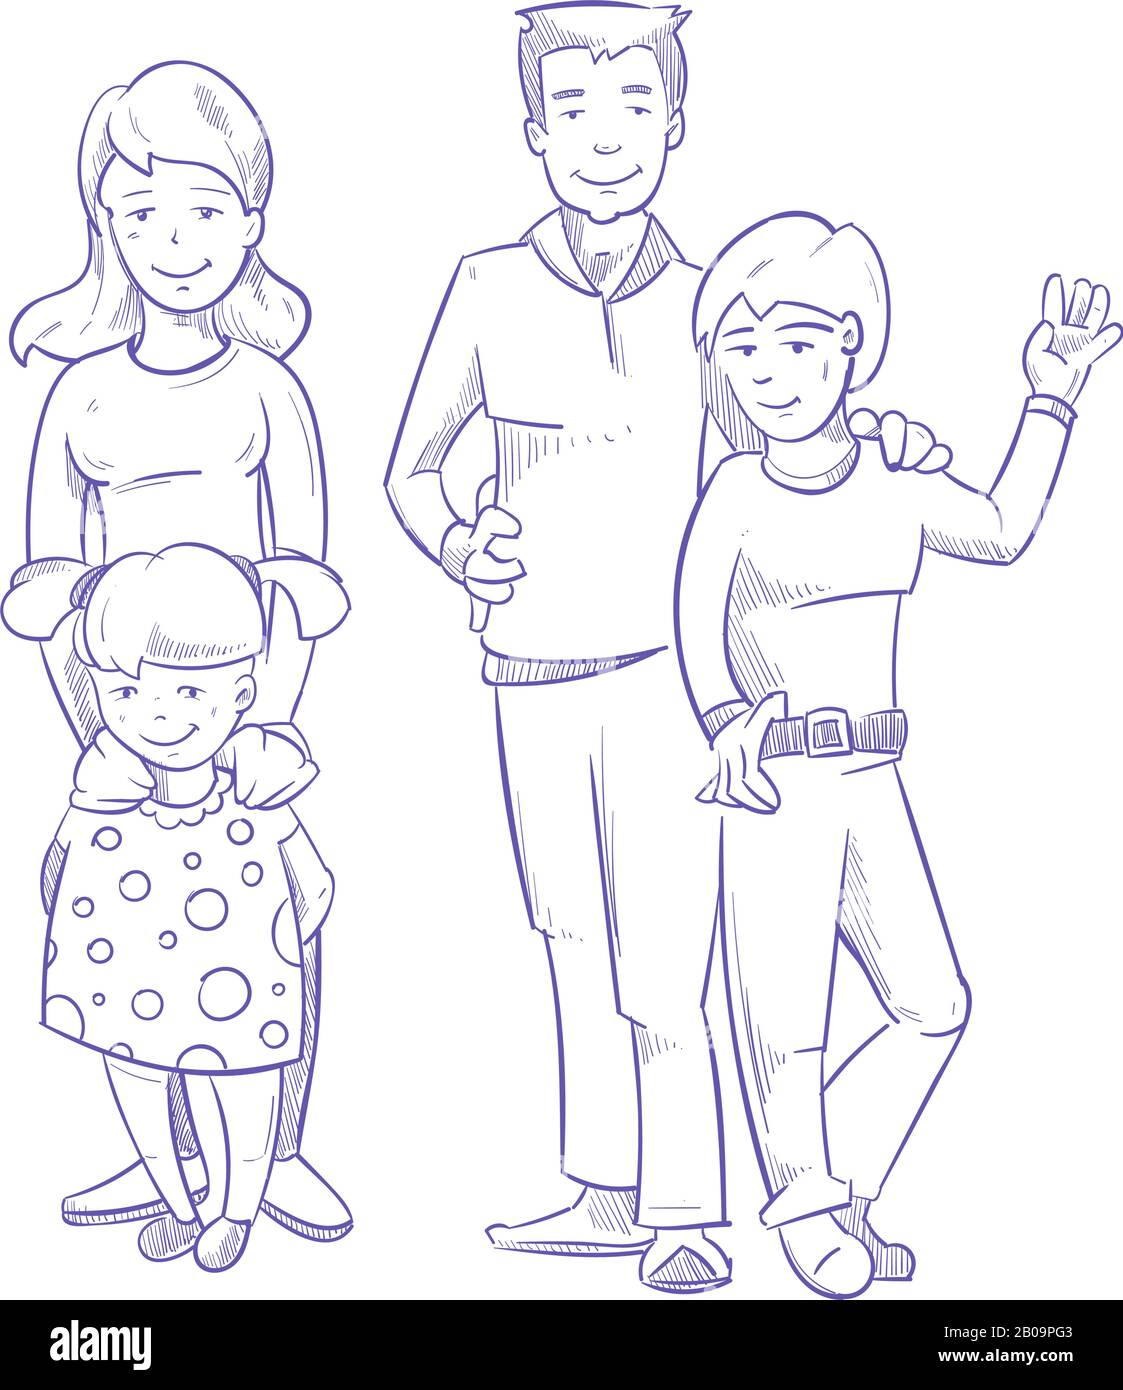 Нарисовать семью из 5 человек. Семья рисунок. Семья рисунок карандашом для детей. Рисунок семьи 5 человек. Рисунок на тему семья карандашом.